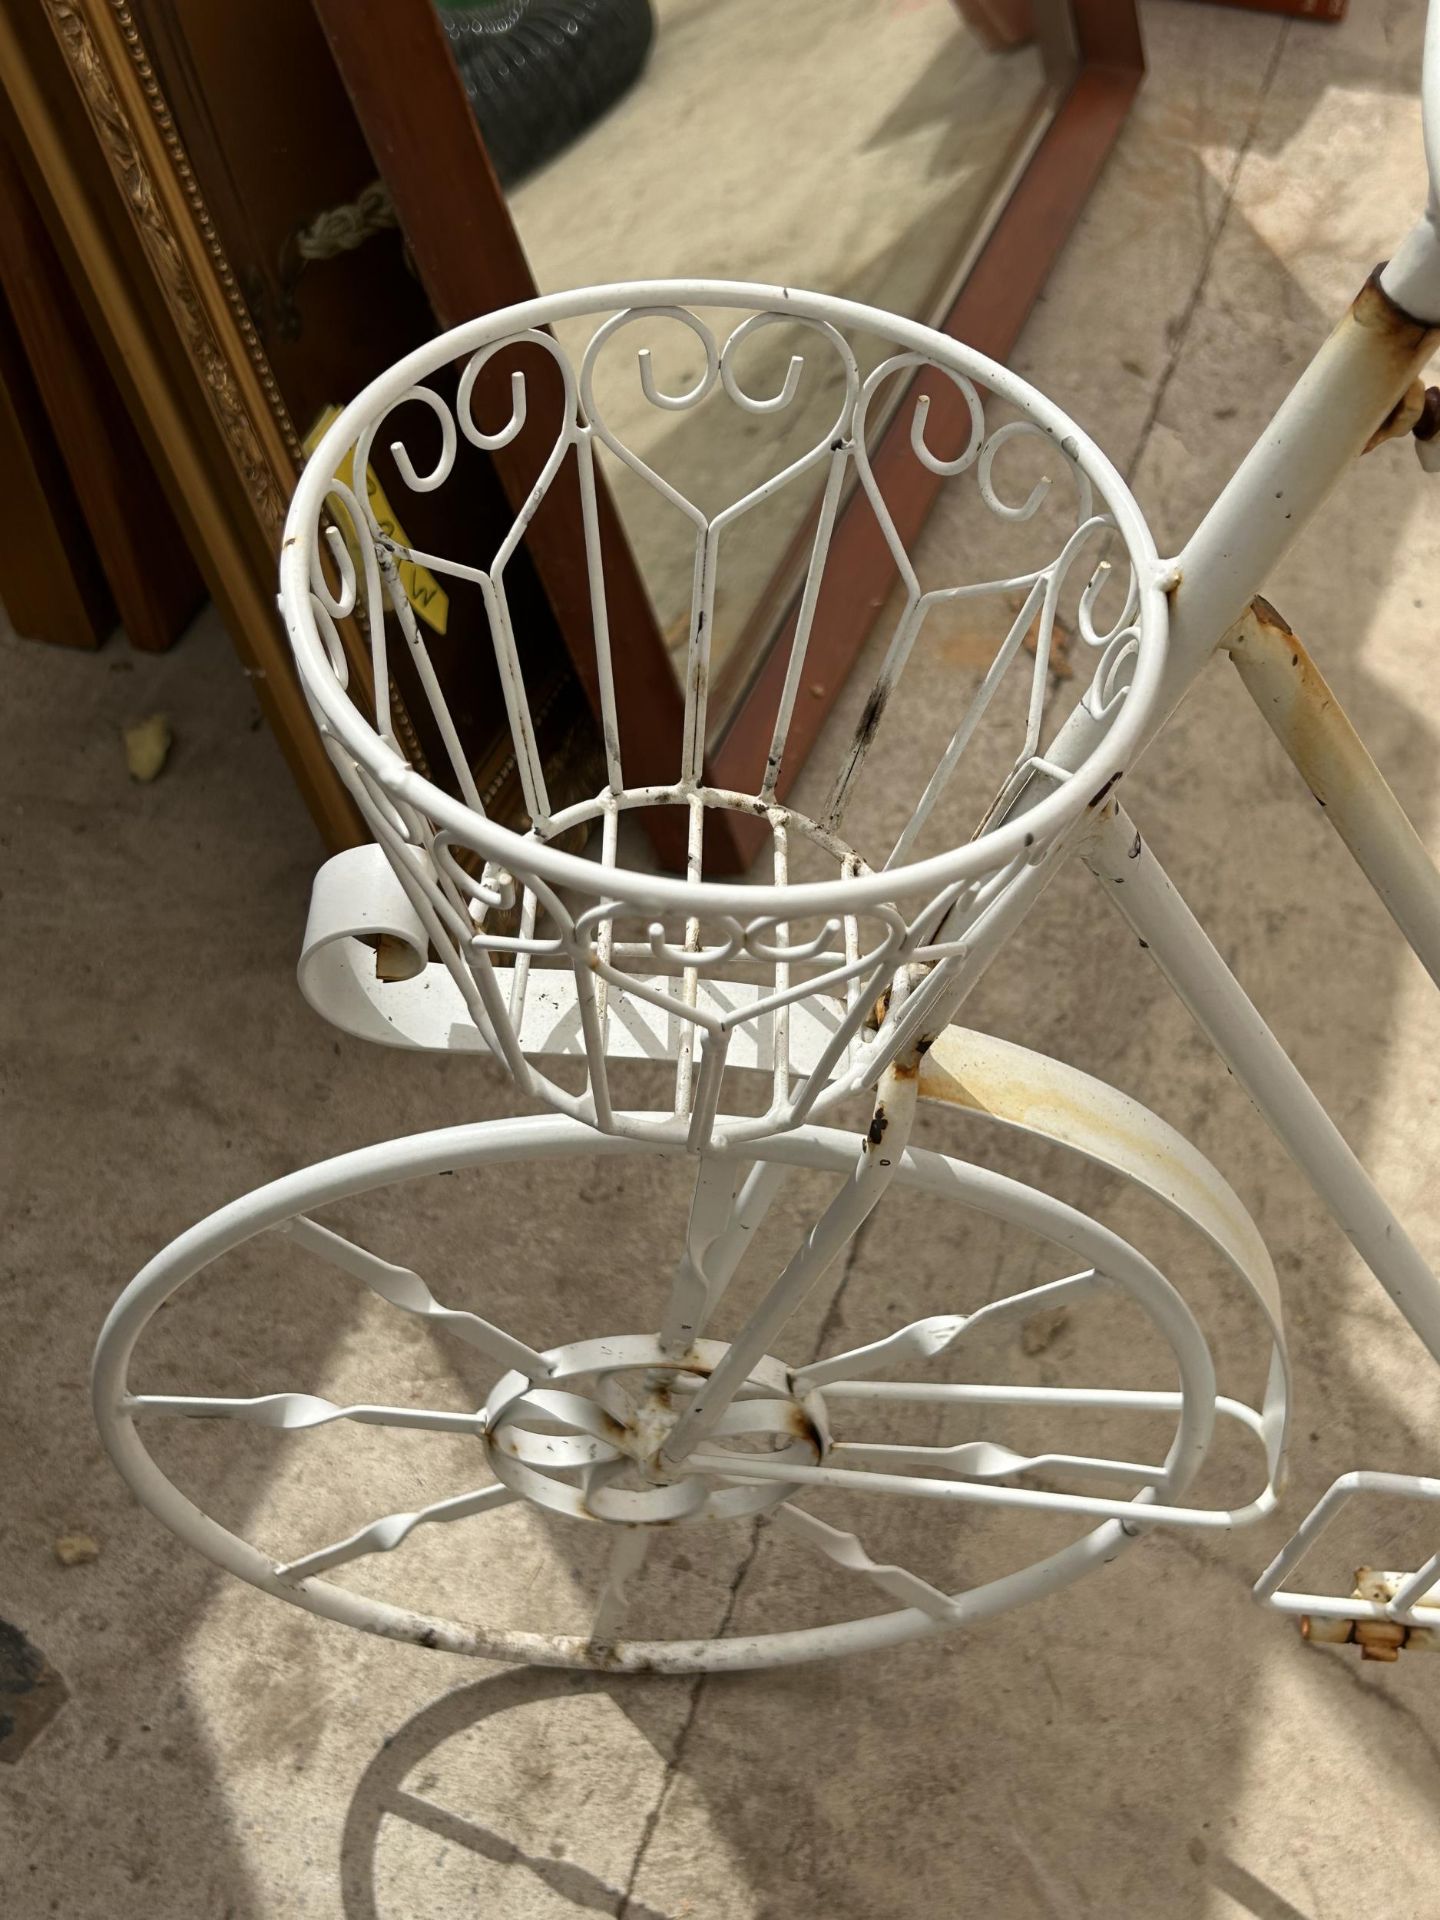 A VINTAGE WHITE METAL BICYCLE DESIGN PLANTER DISPLAY - Bild 2 aus 3